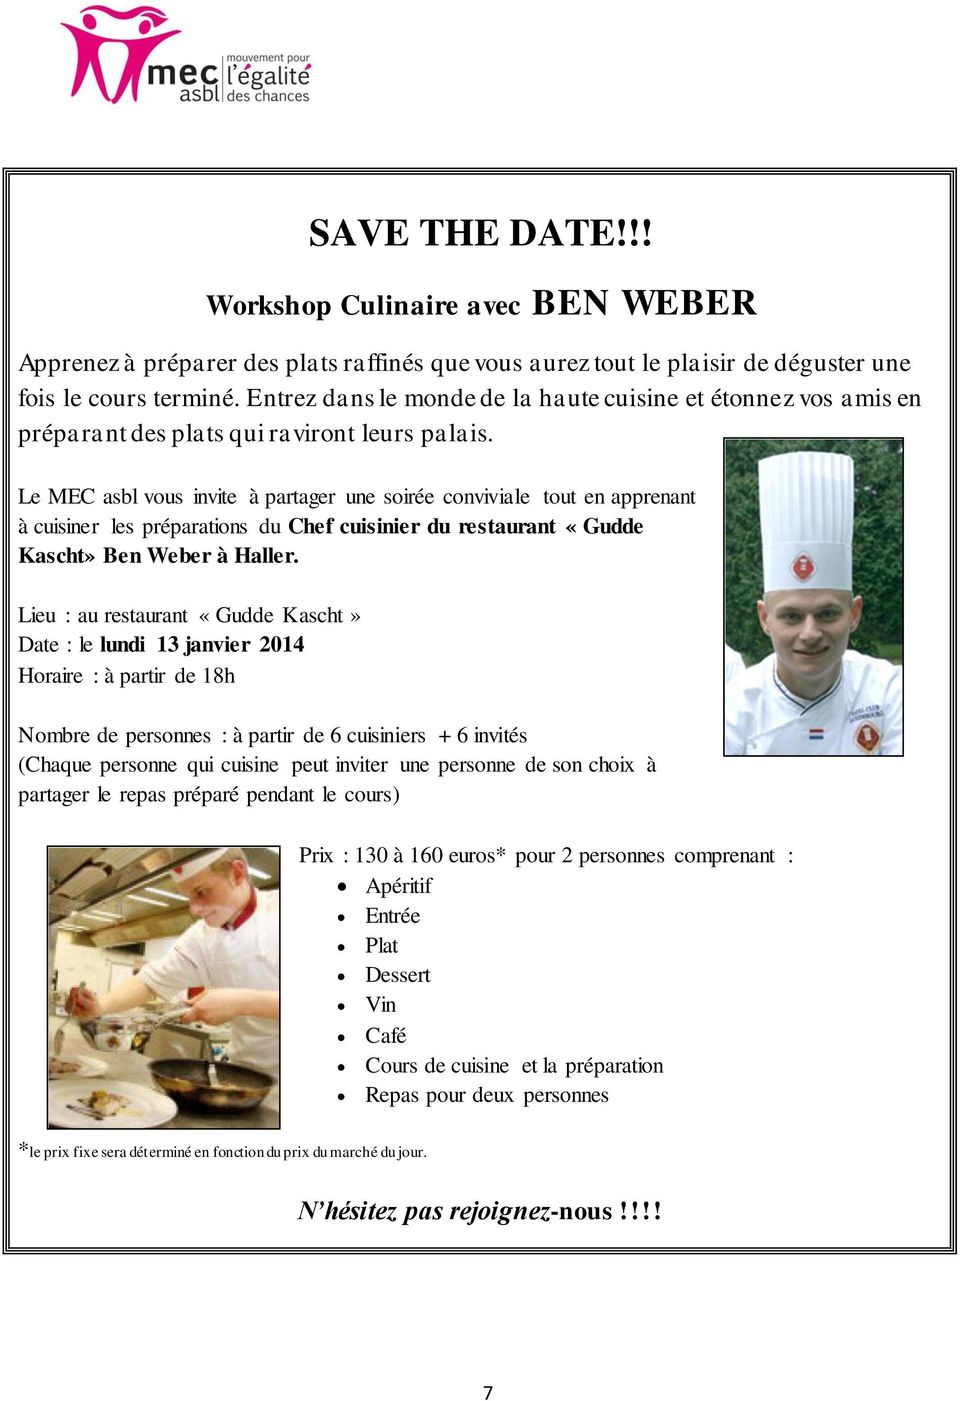 Le MEC asbl vous invite à partager une soirée conviviale tout en apprenant à cuisiner les préparations du Chef cuisinier du restaurant «Gudde Kascht» Ben Weber à Haller.